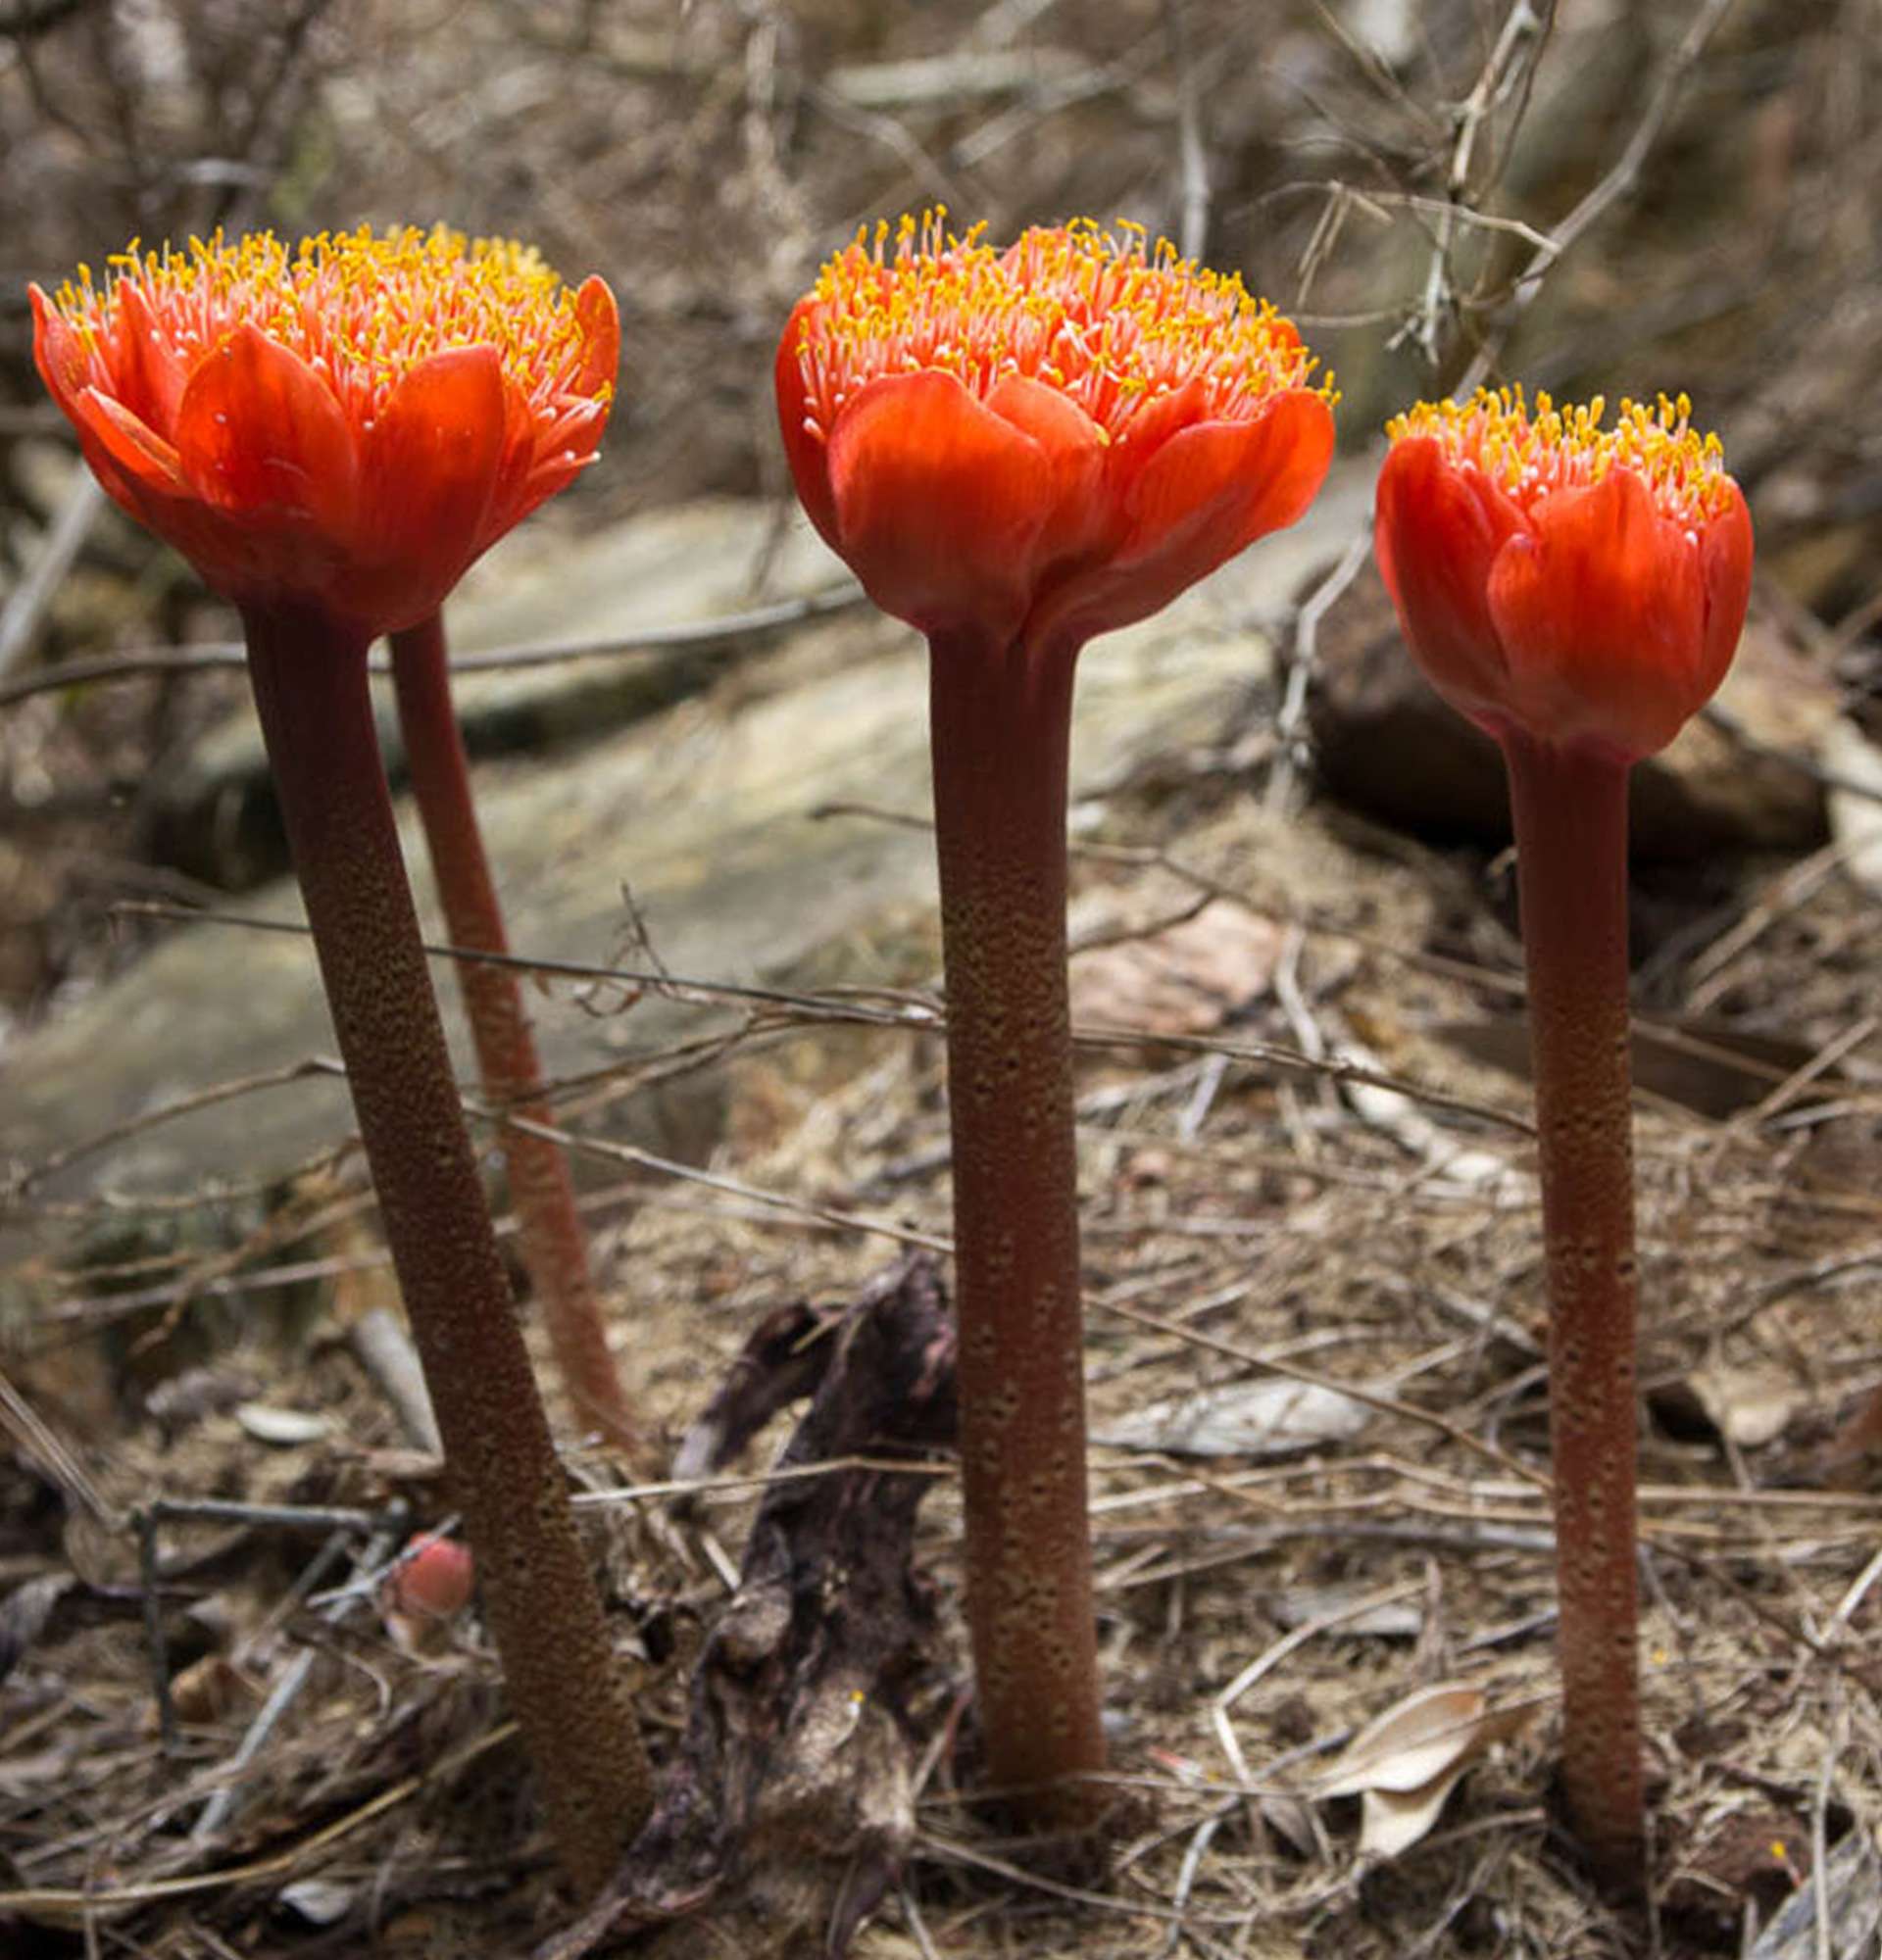  гемантус в среде обитания фото - красный цветок